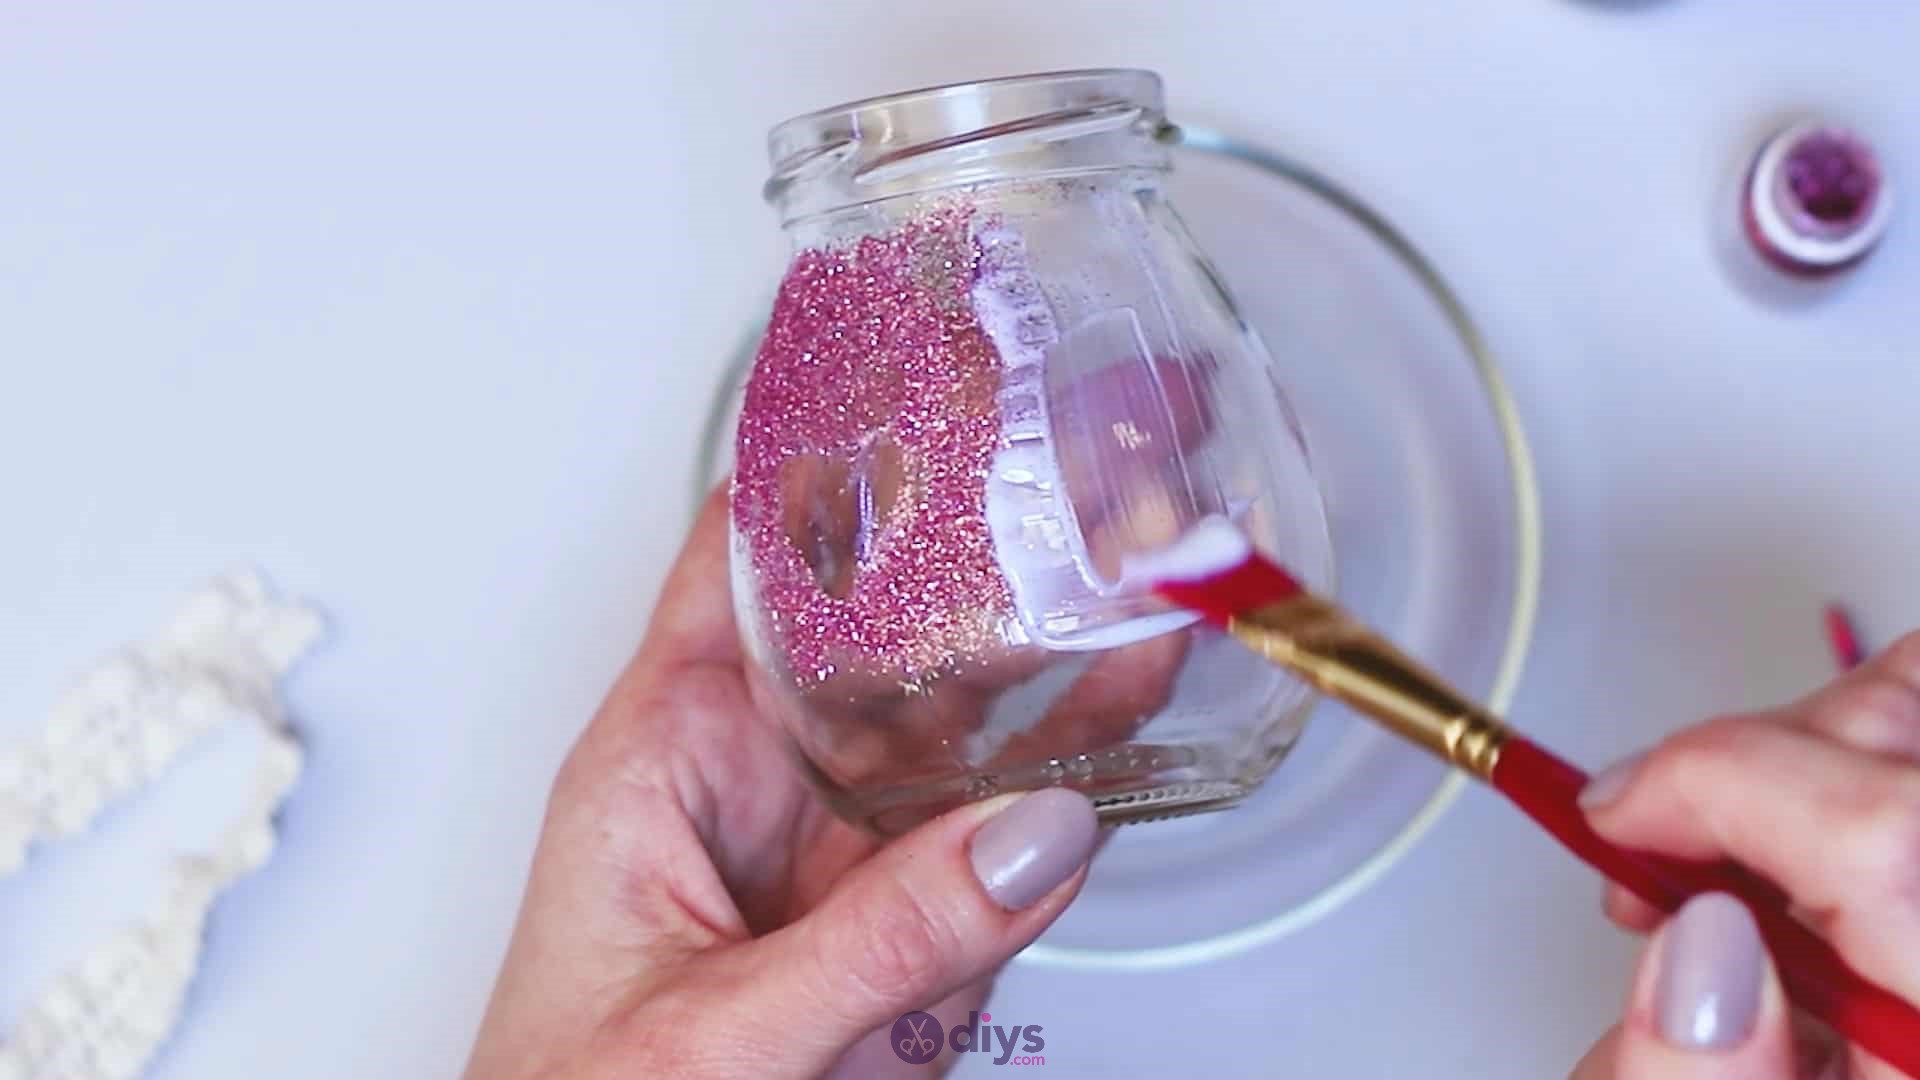 Diy flower glitter vase from glass jars step 6b